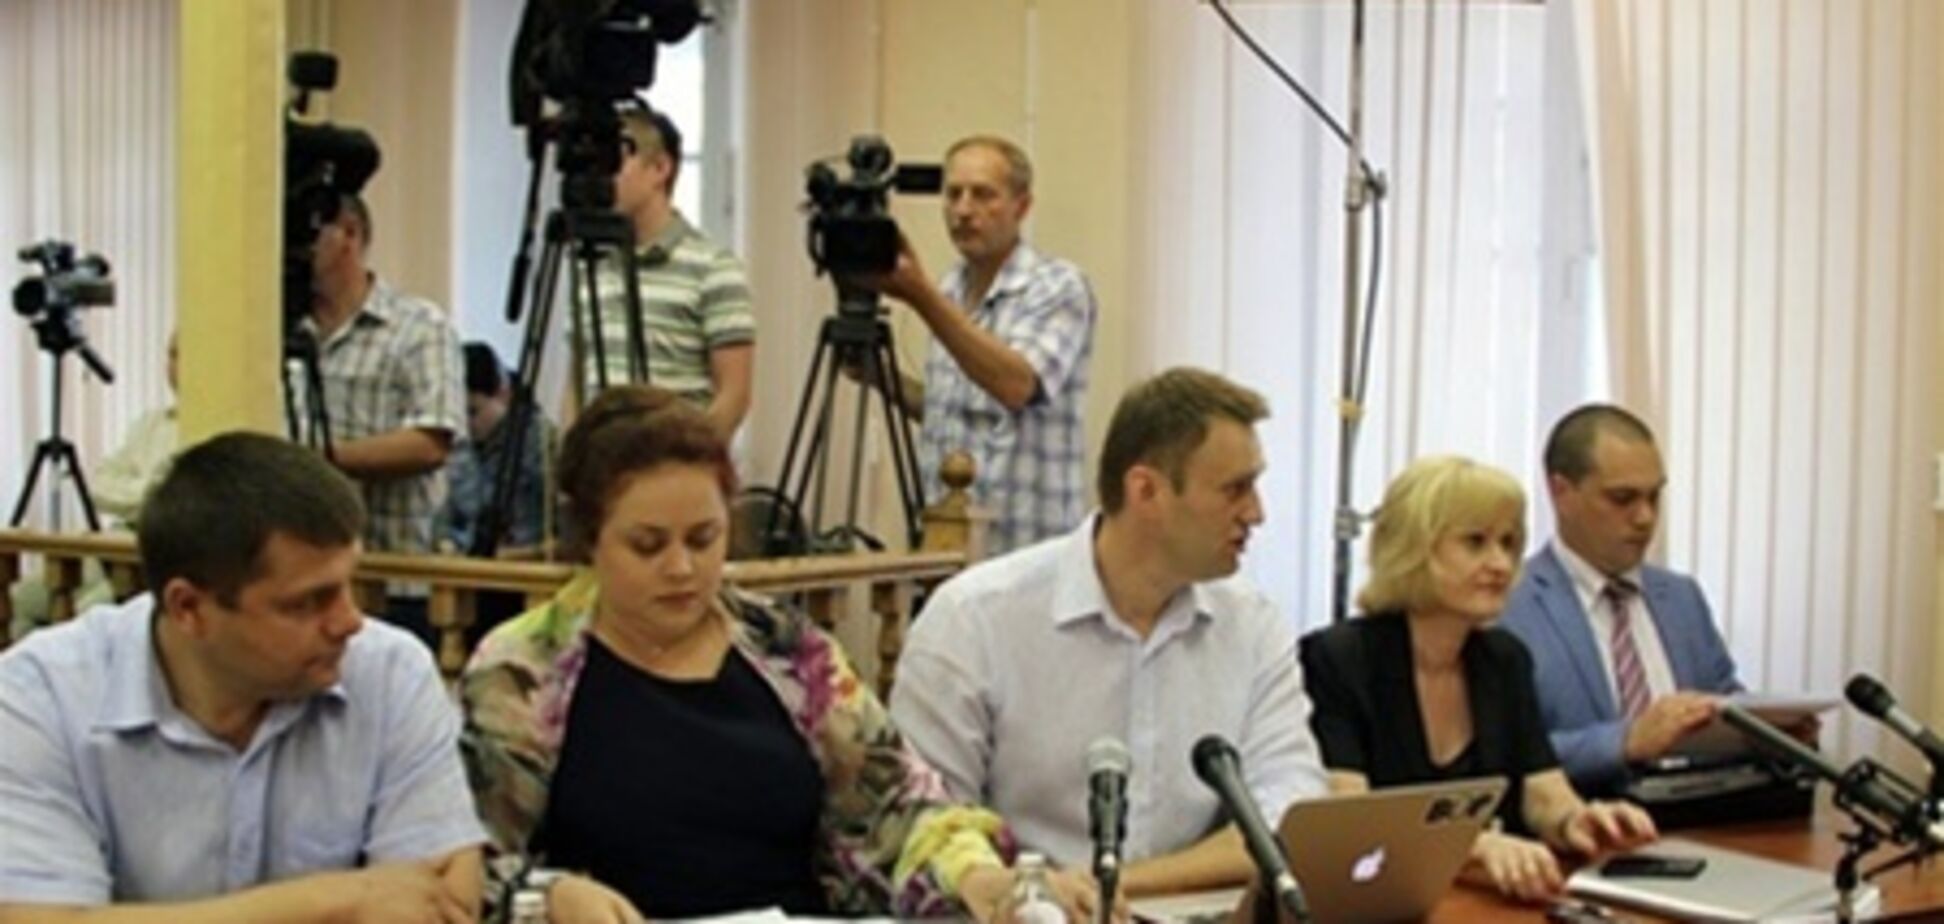 У суду в Кірові заблокували дорогу для автозаку з Навальним